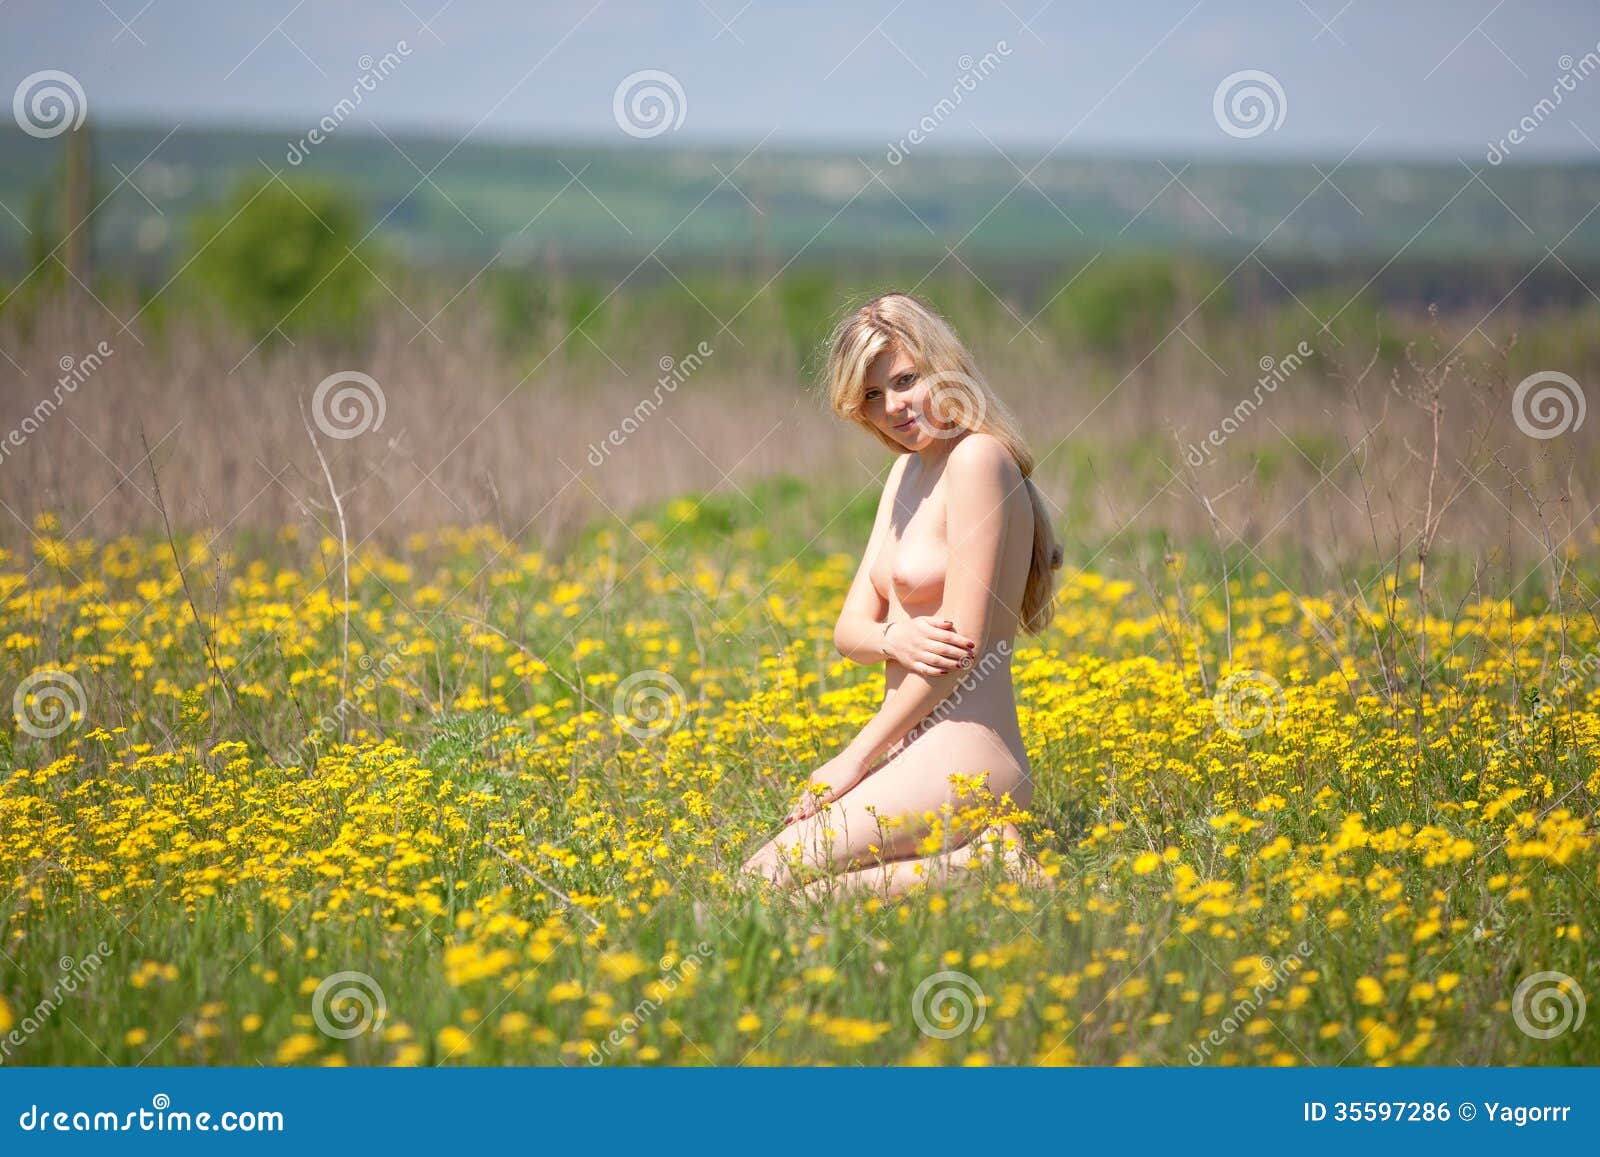 Naked Flower Girl